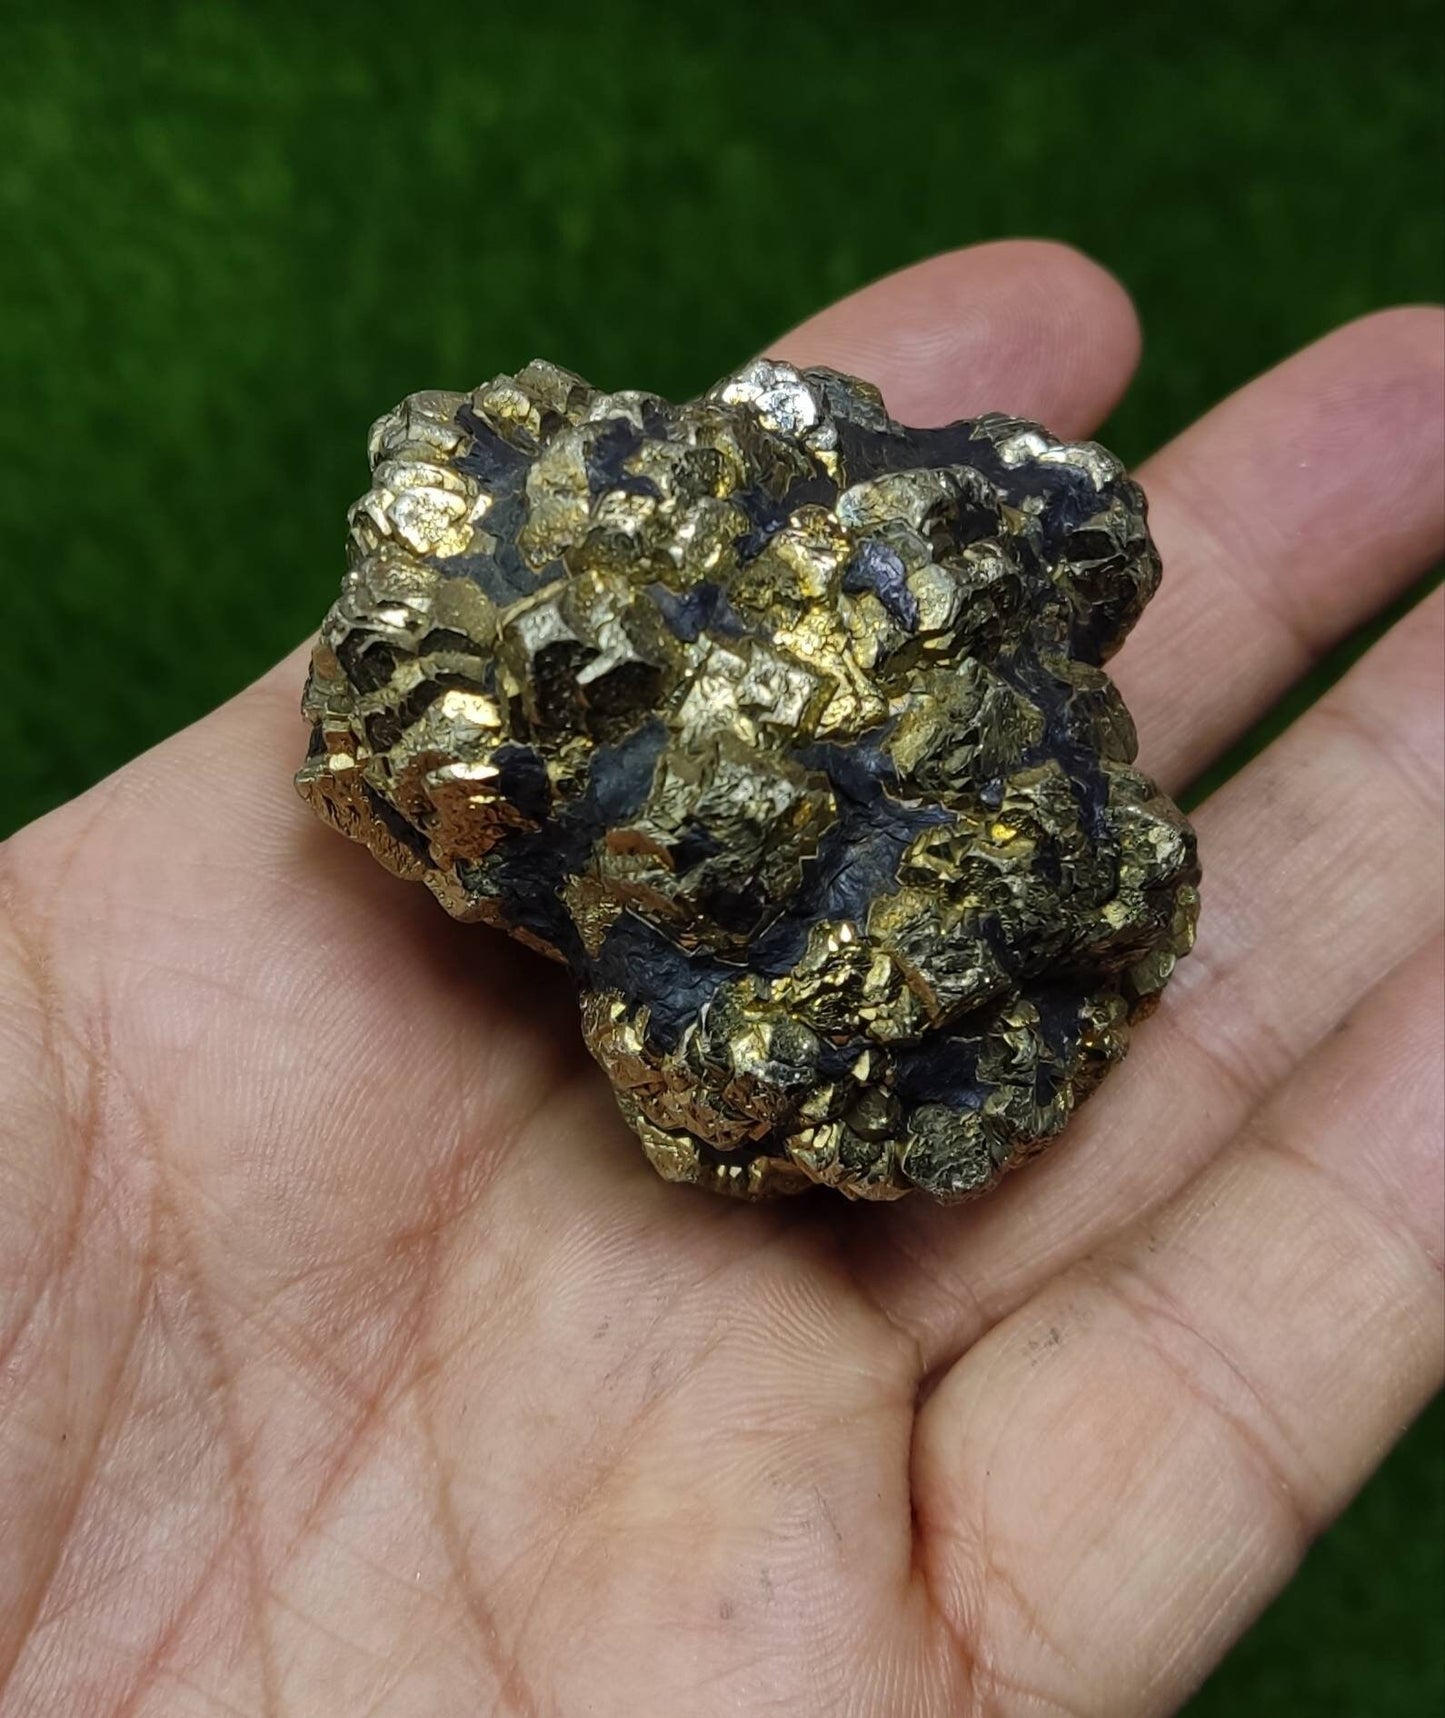 Pyrite/marcasite specimen 250 grams